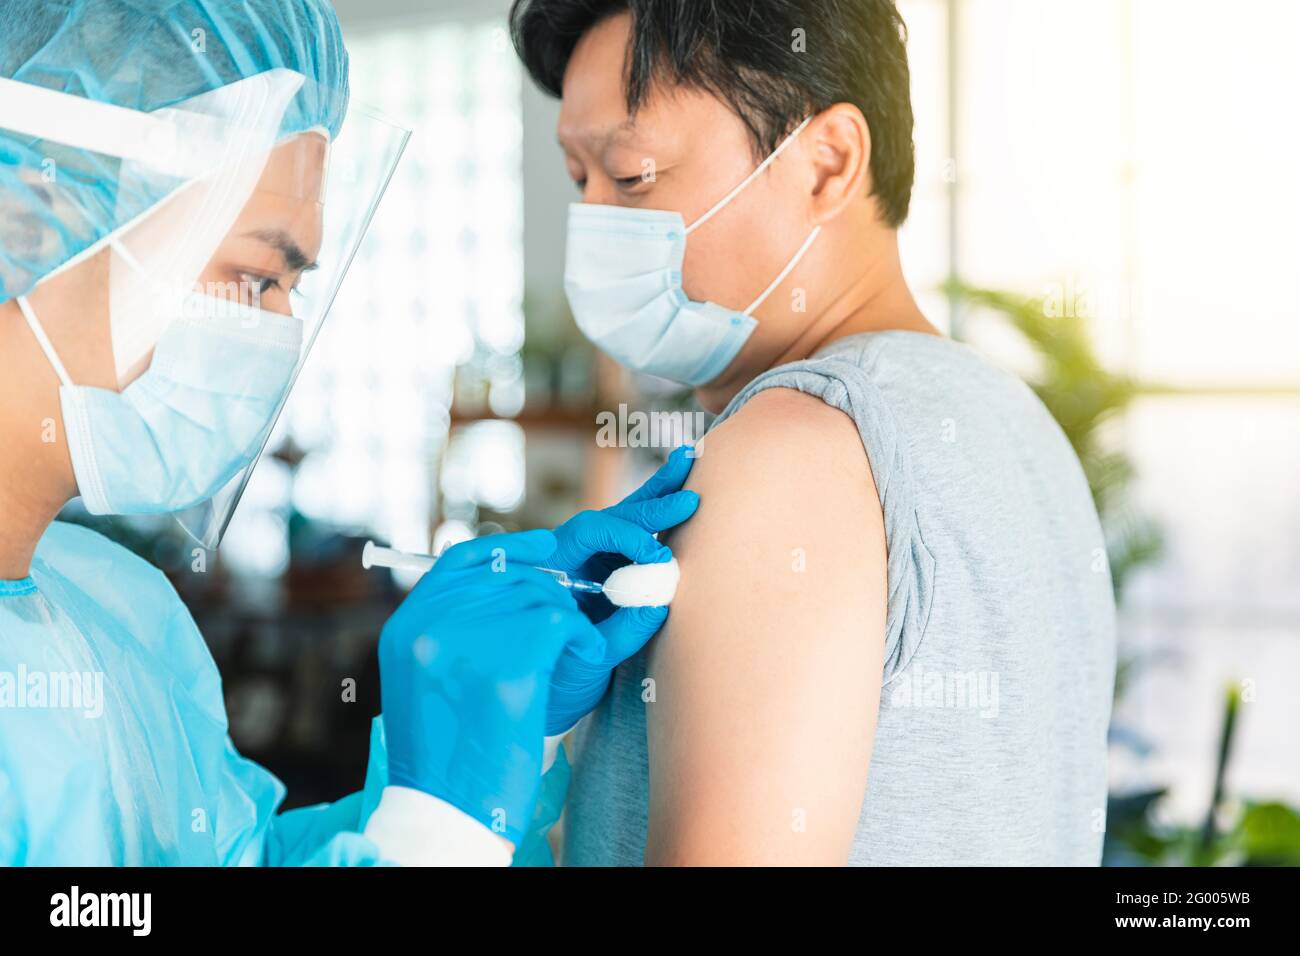 Arzt trägt Gesicht schützende medizinische Maske zum Schutz vor Viren Krankheit mit Spritze, die Impfstoffinjektion an männlichen Patienten macht Stockfoto